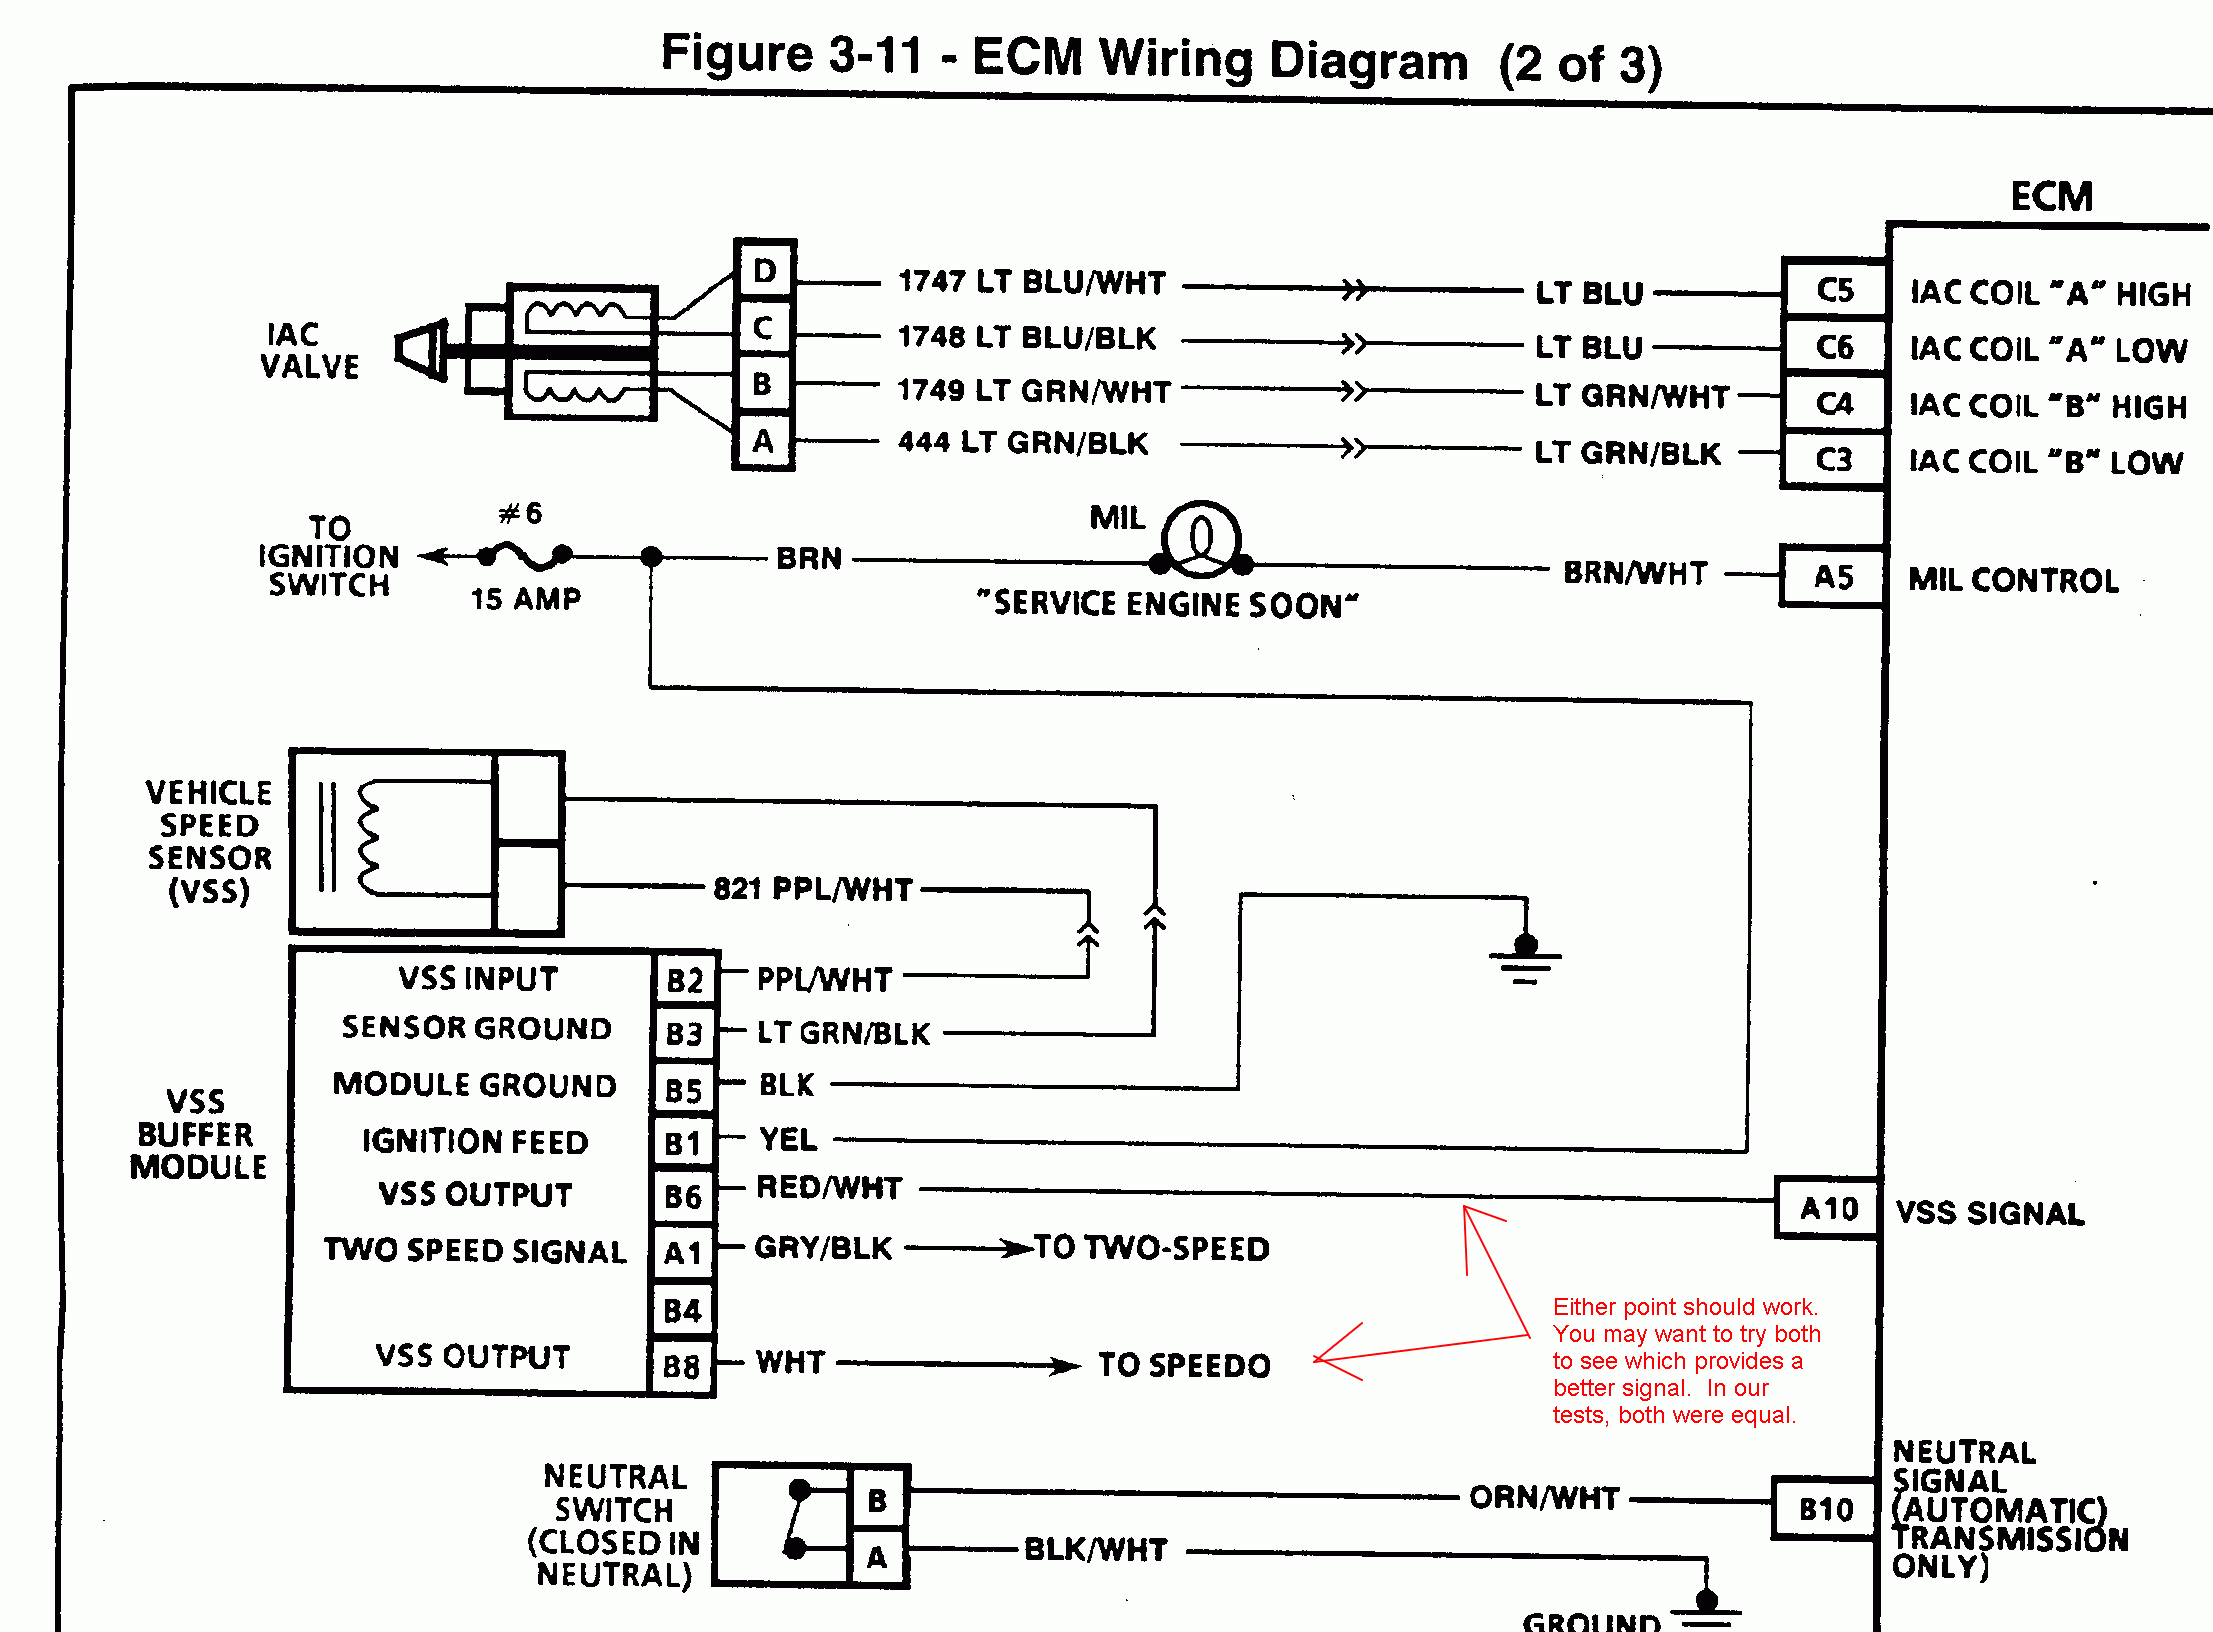 3 Speed Sensor Wire Diagram | Wiring Diagram - 2 Wire Speed Sensor Wiring Diagram